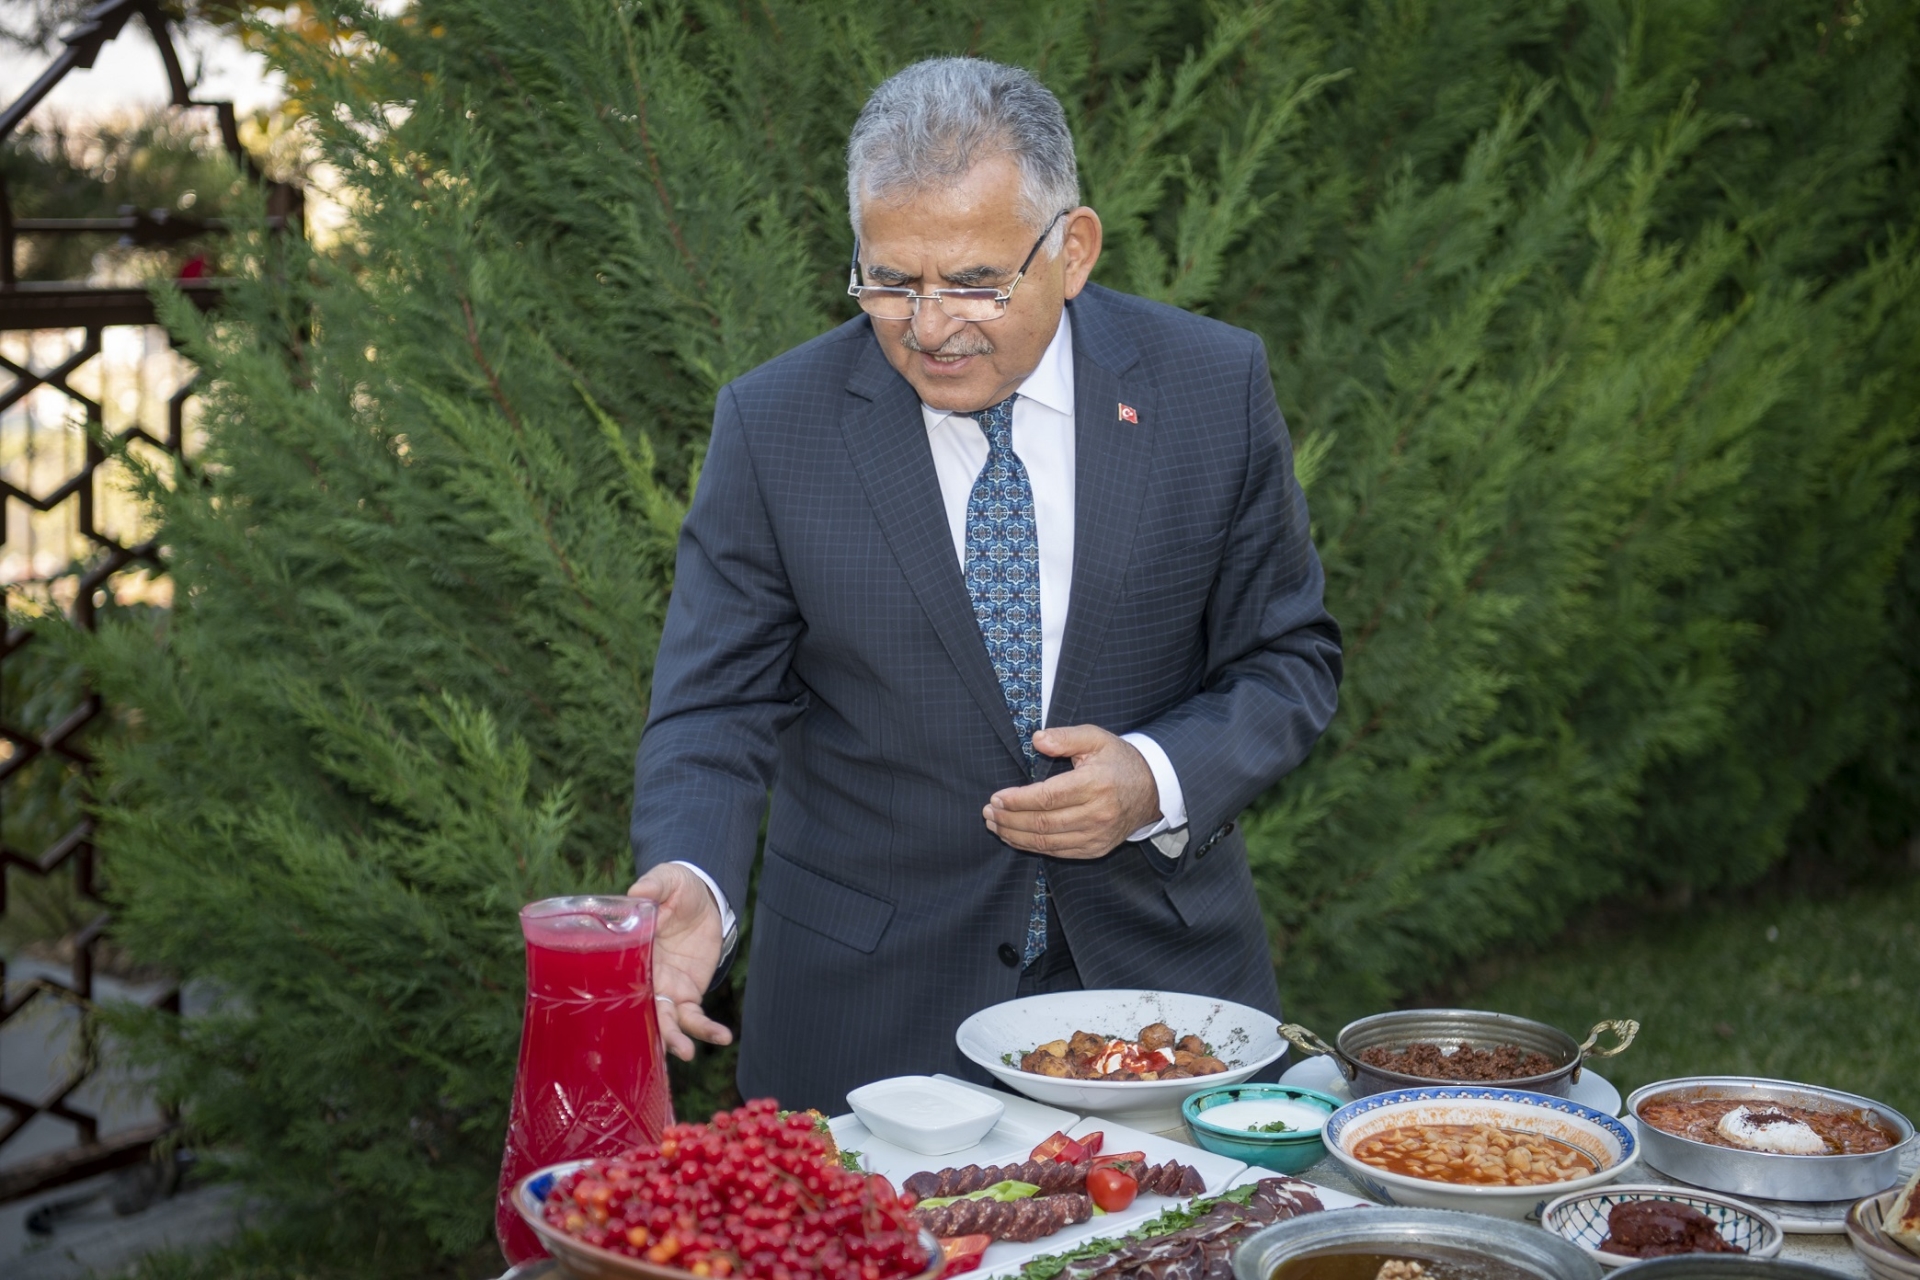 Kayseri Büyükşehir'in Gastronomideki Çalışmaları Örnek Gösteriliyor